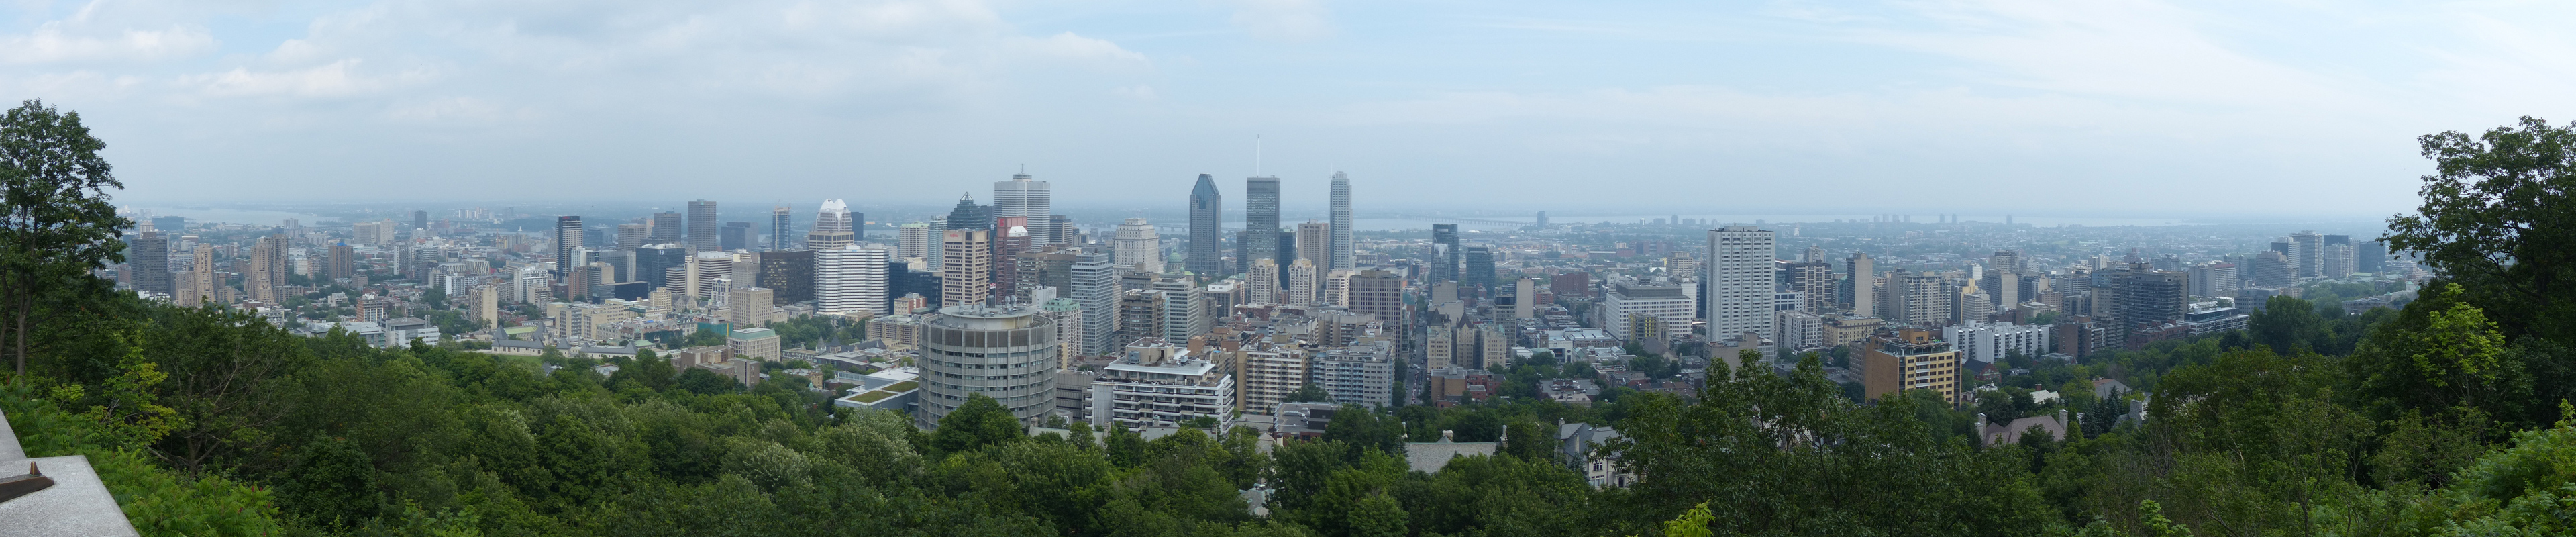 panoramic_montreal_overlook_180.jpg